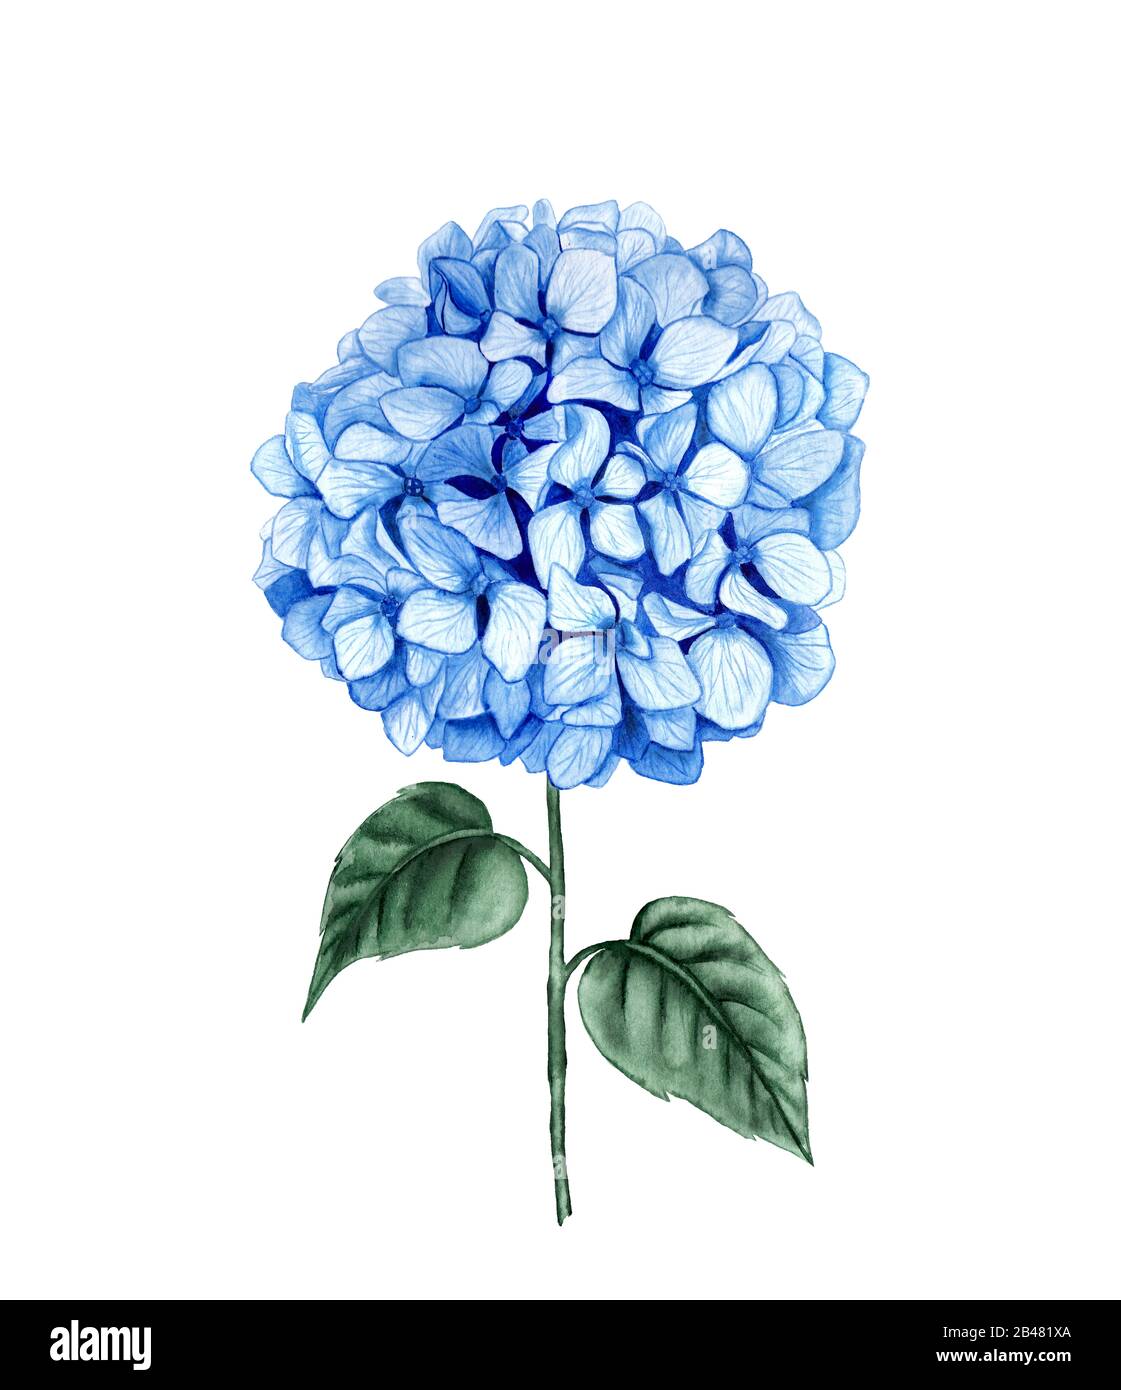 Hydrangea-Stamm-Aquarellzeichnung. Blaue Sommerblume isoliert auf weißem Grund. Für Postkarten, Drucke und Notepad-Design Stockfoto